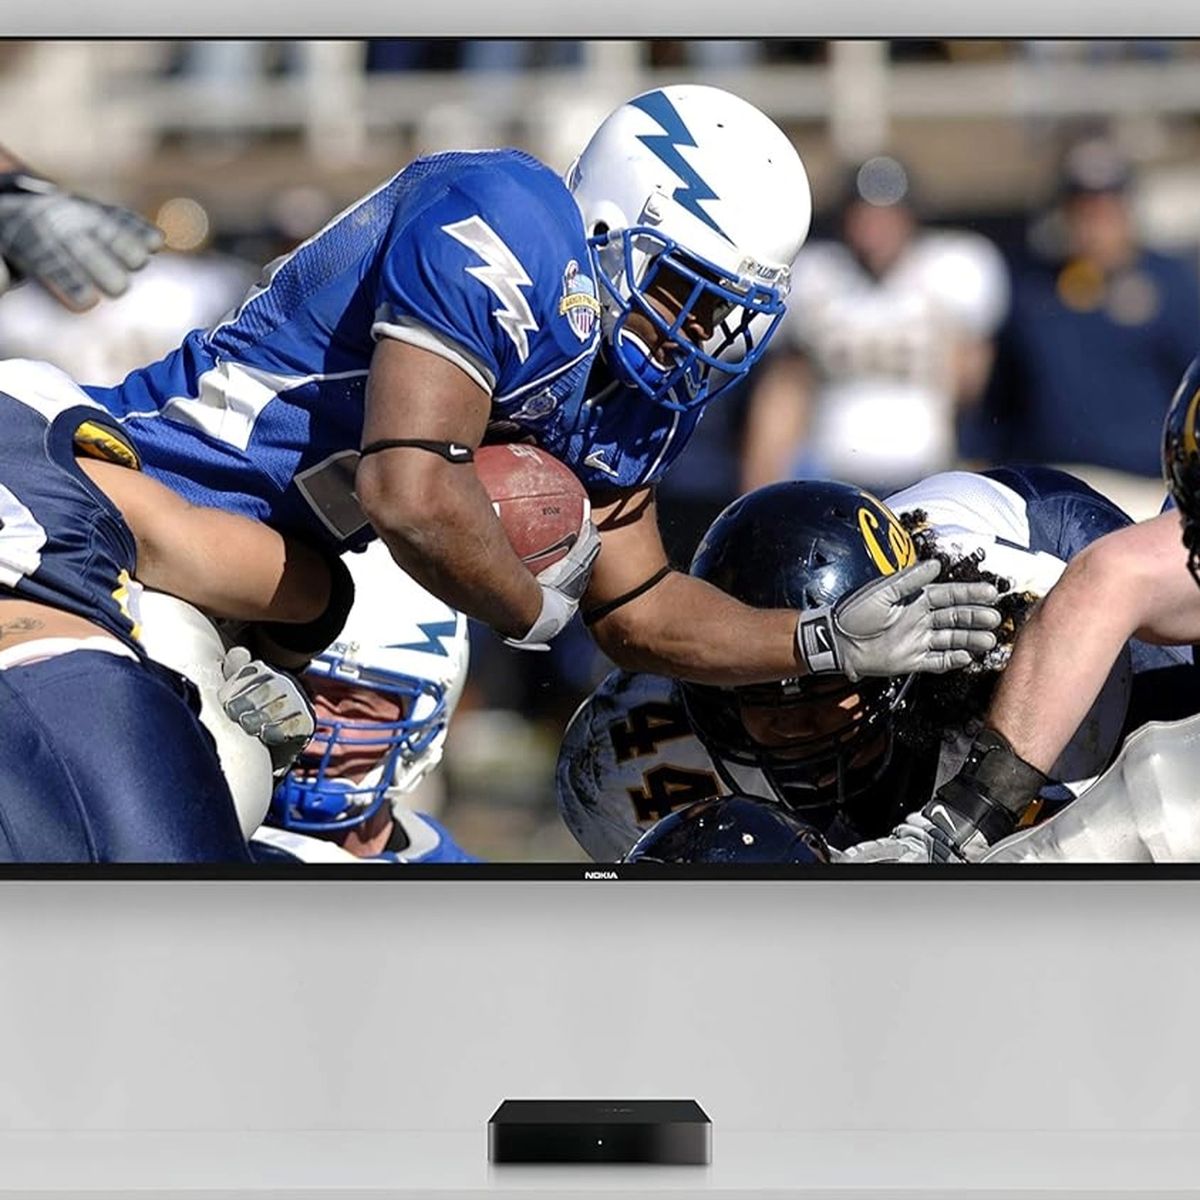 Nokia Receptor DVB-T/DVB-T2 HD: Disfruta de TV Terrestre en Alta Definición  